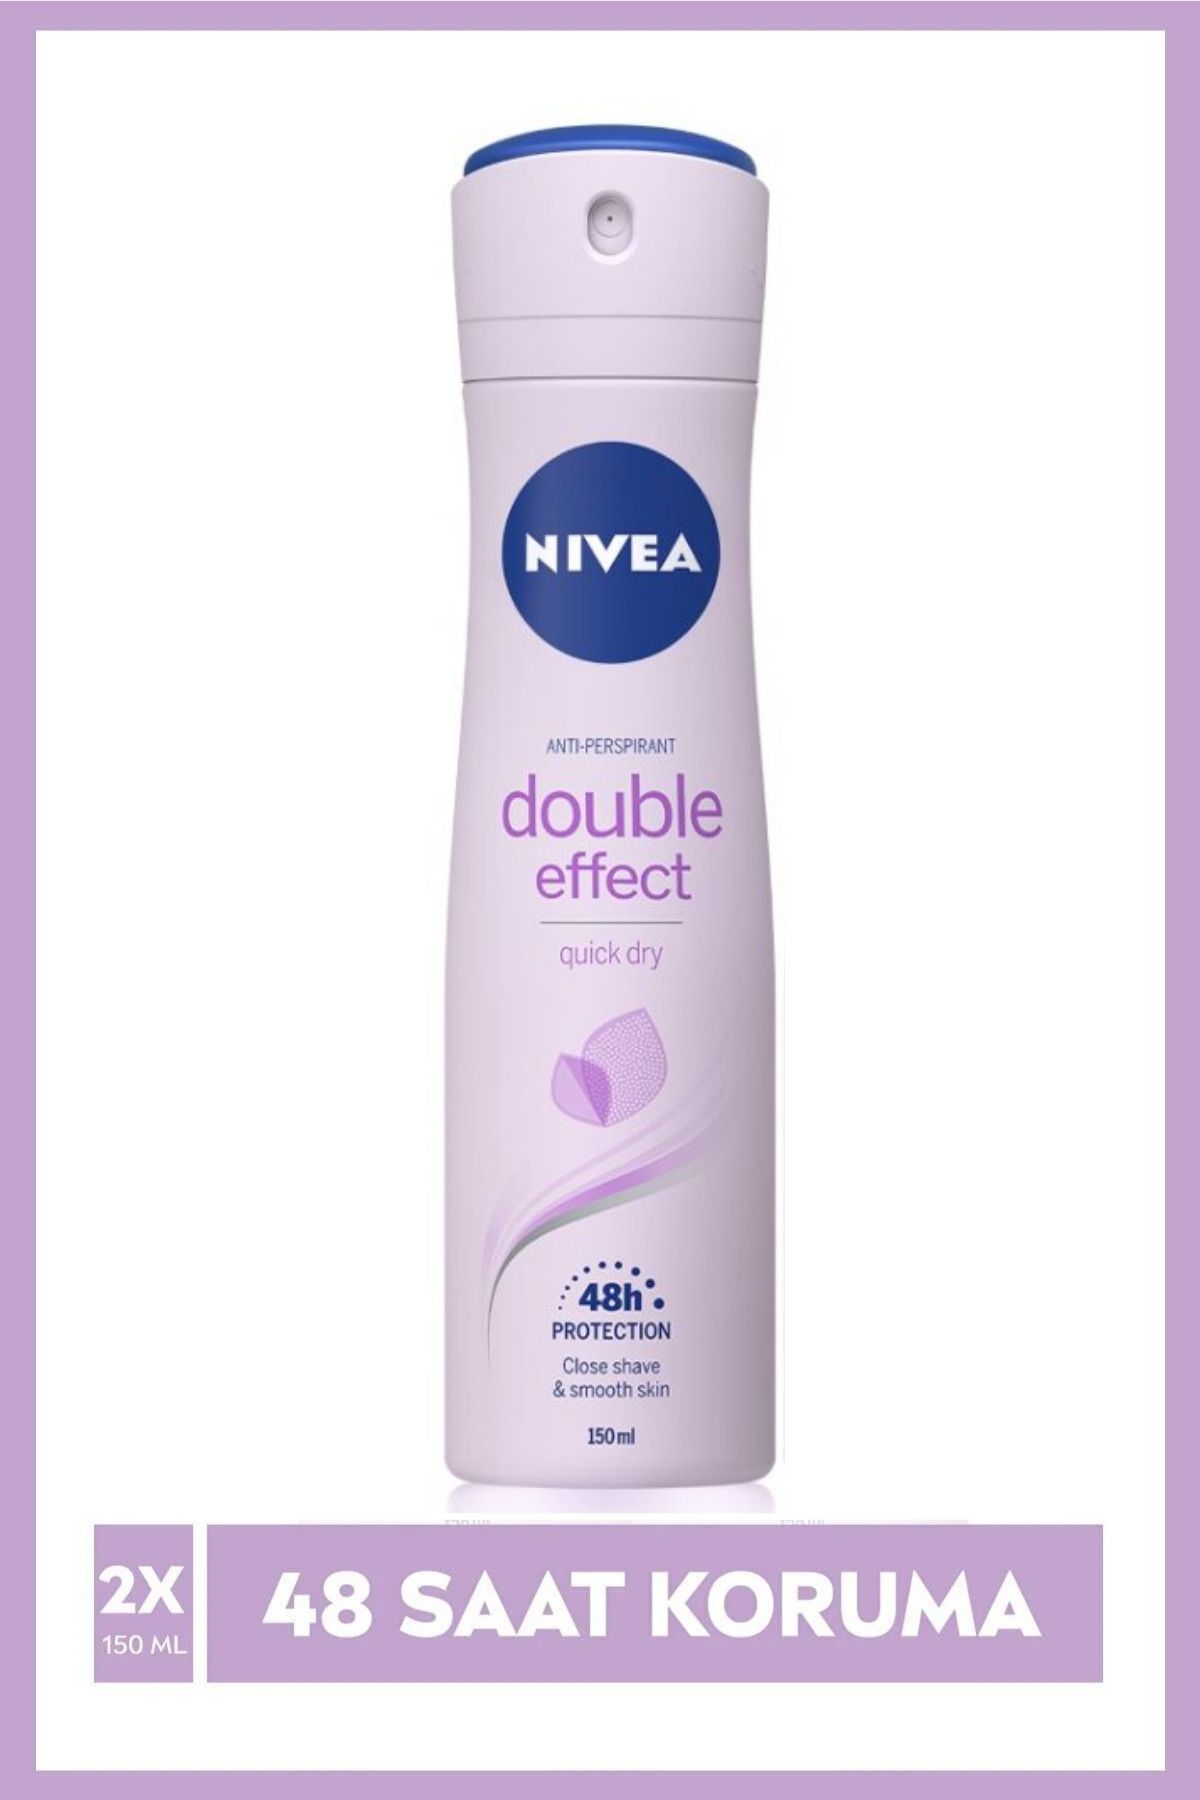 NIVEA Kadın Sprey Deodorant Double Effect 150ml, Ter Kokusuna Karşı 48 Saat Koruma, Pürüzsüz Koltuk Altı